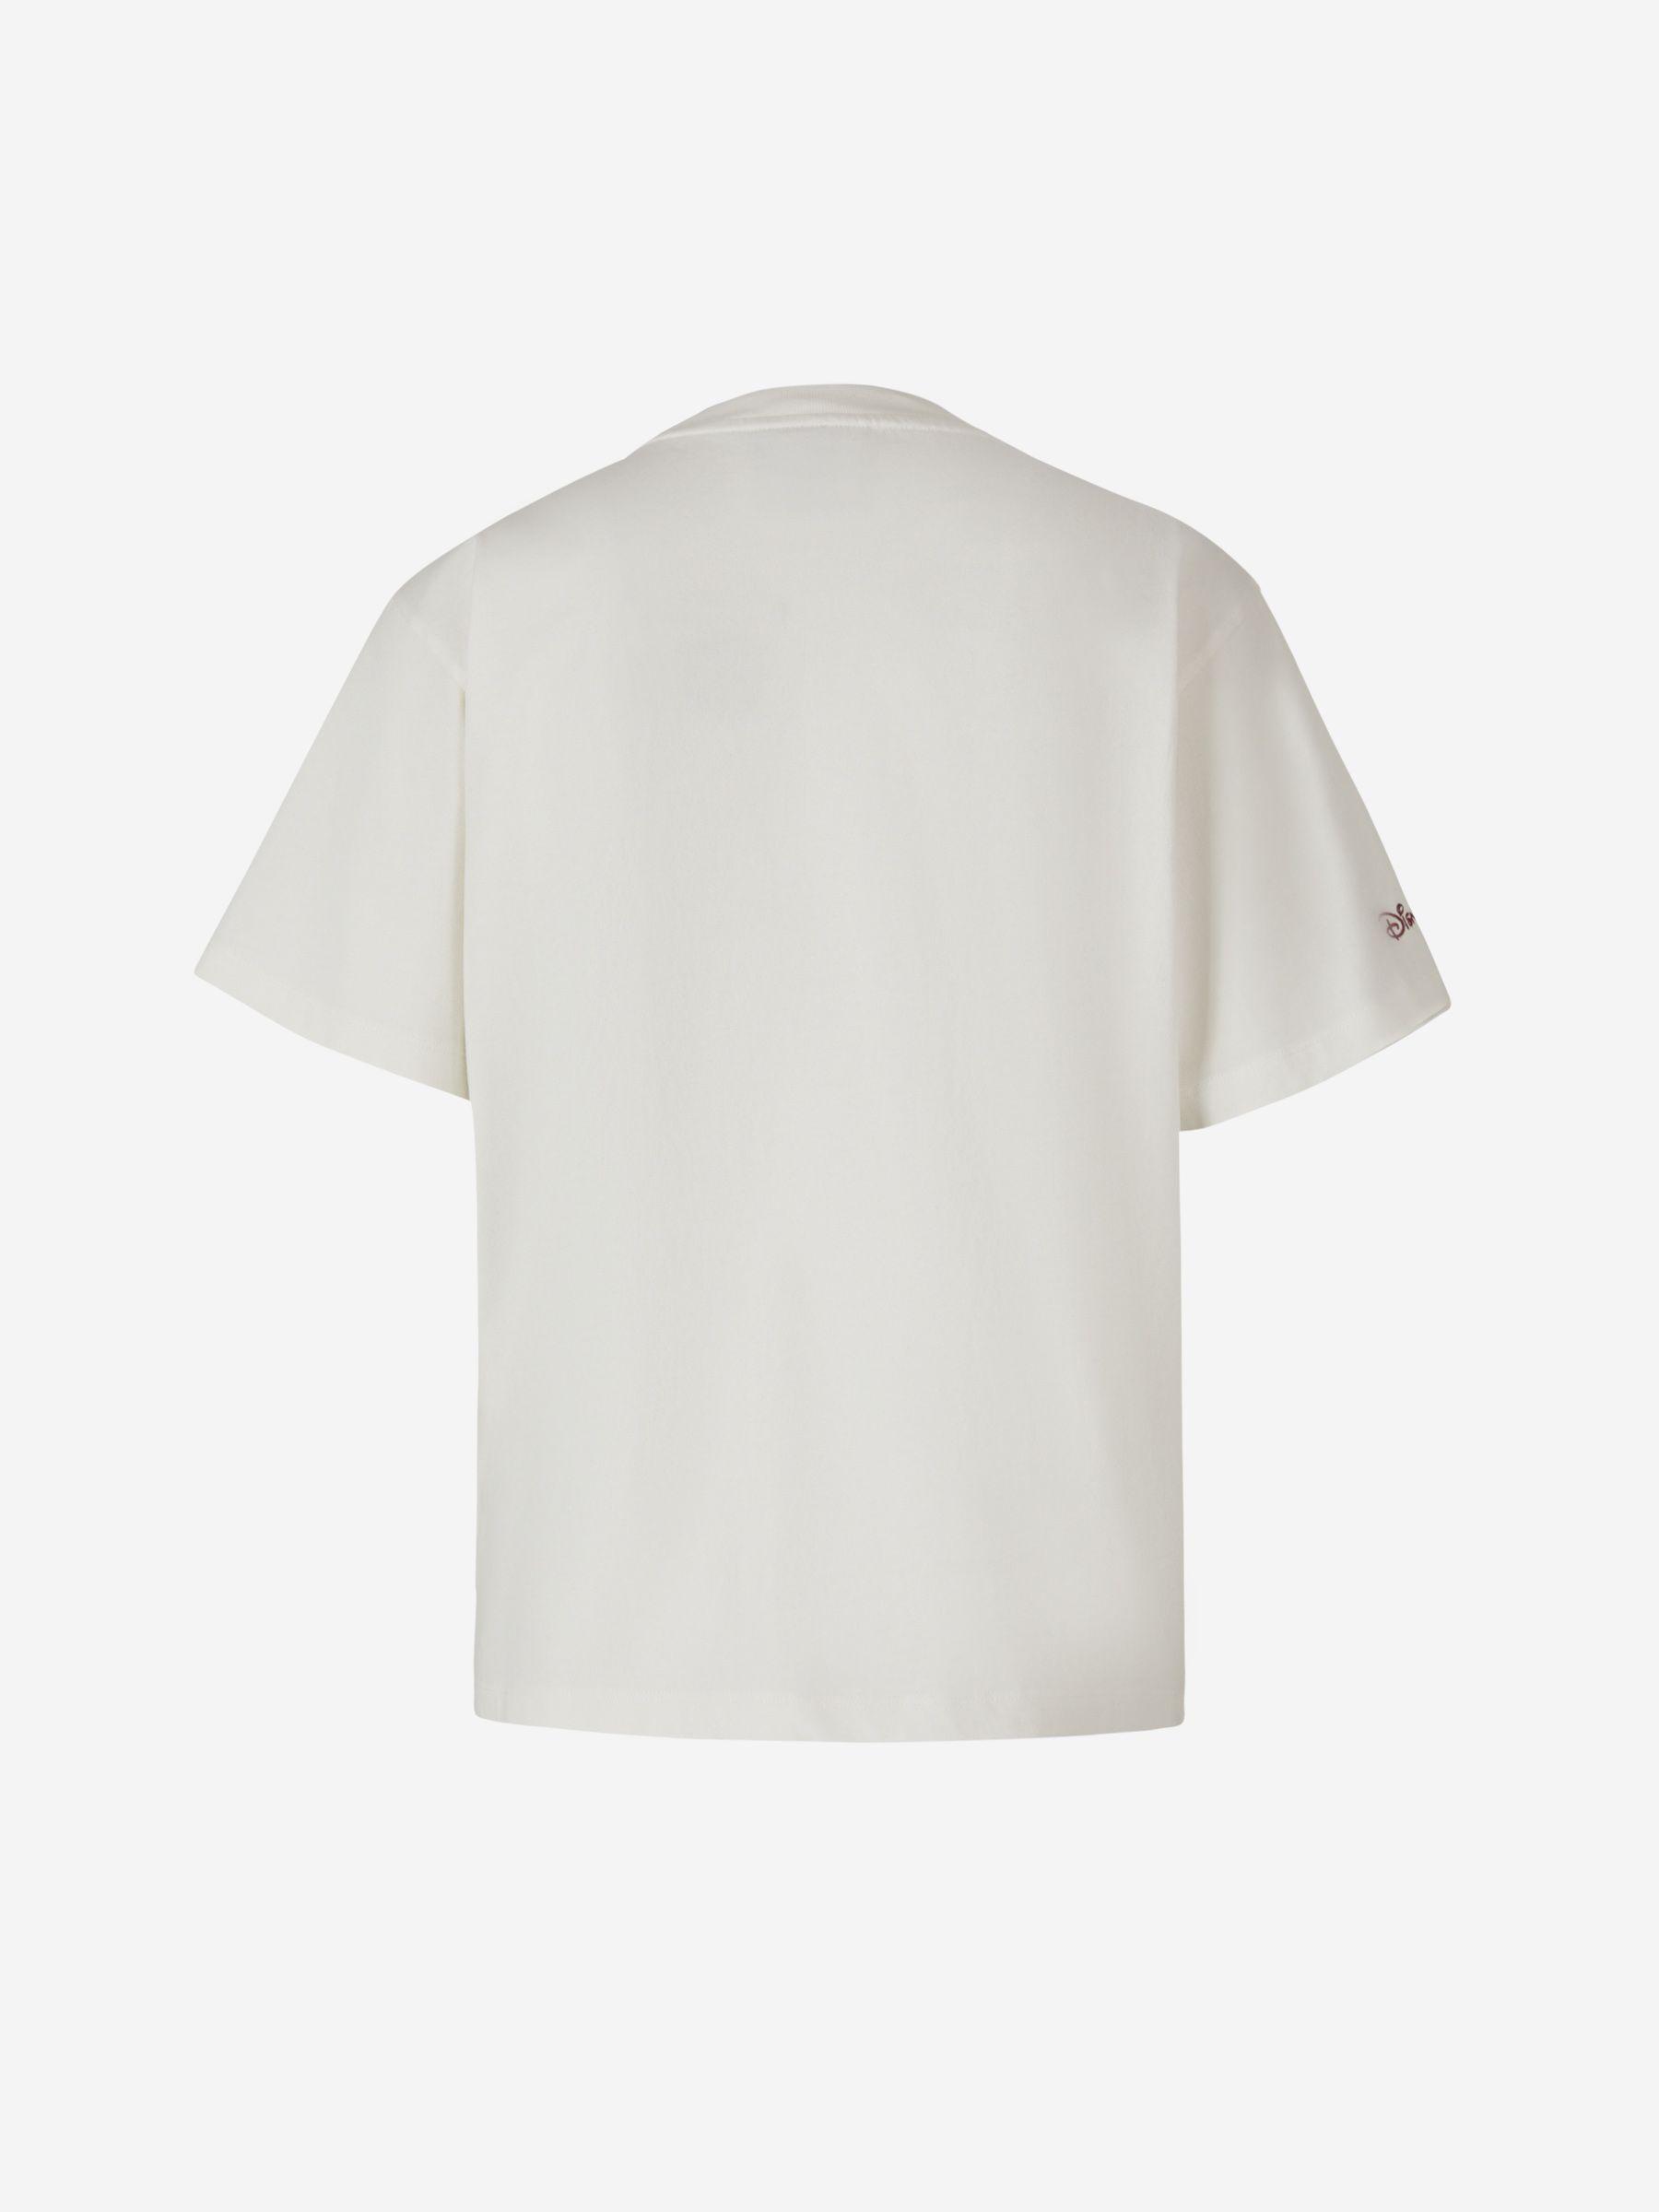 Moncler Roger Rabbit T-shirt in White | Lyst